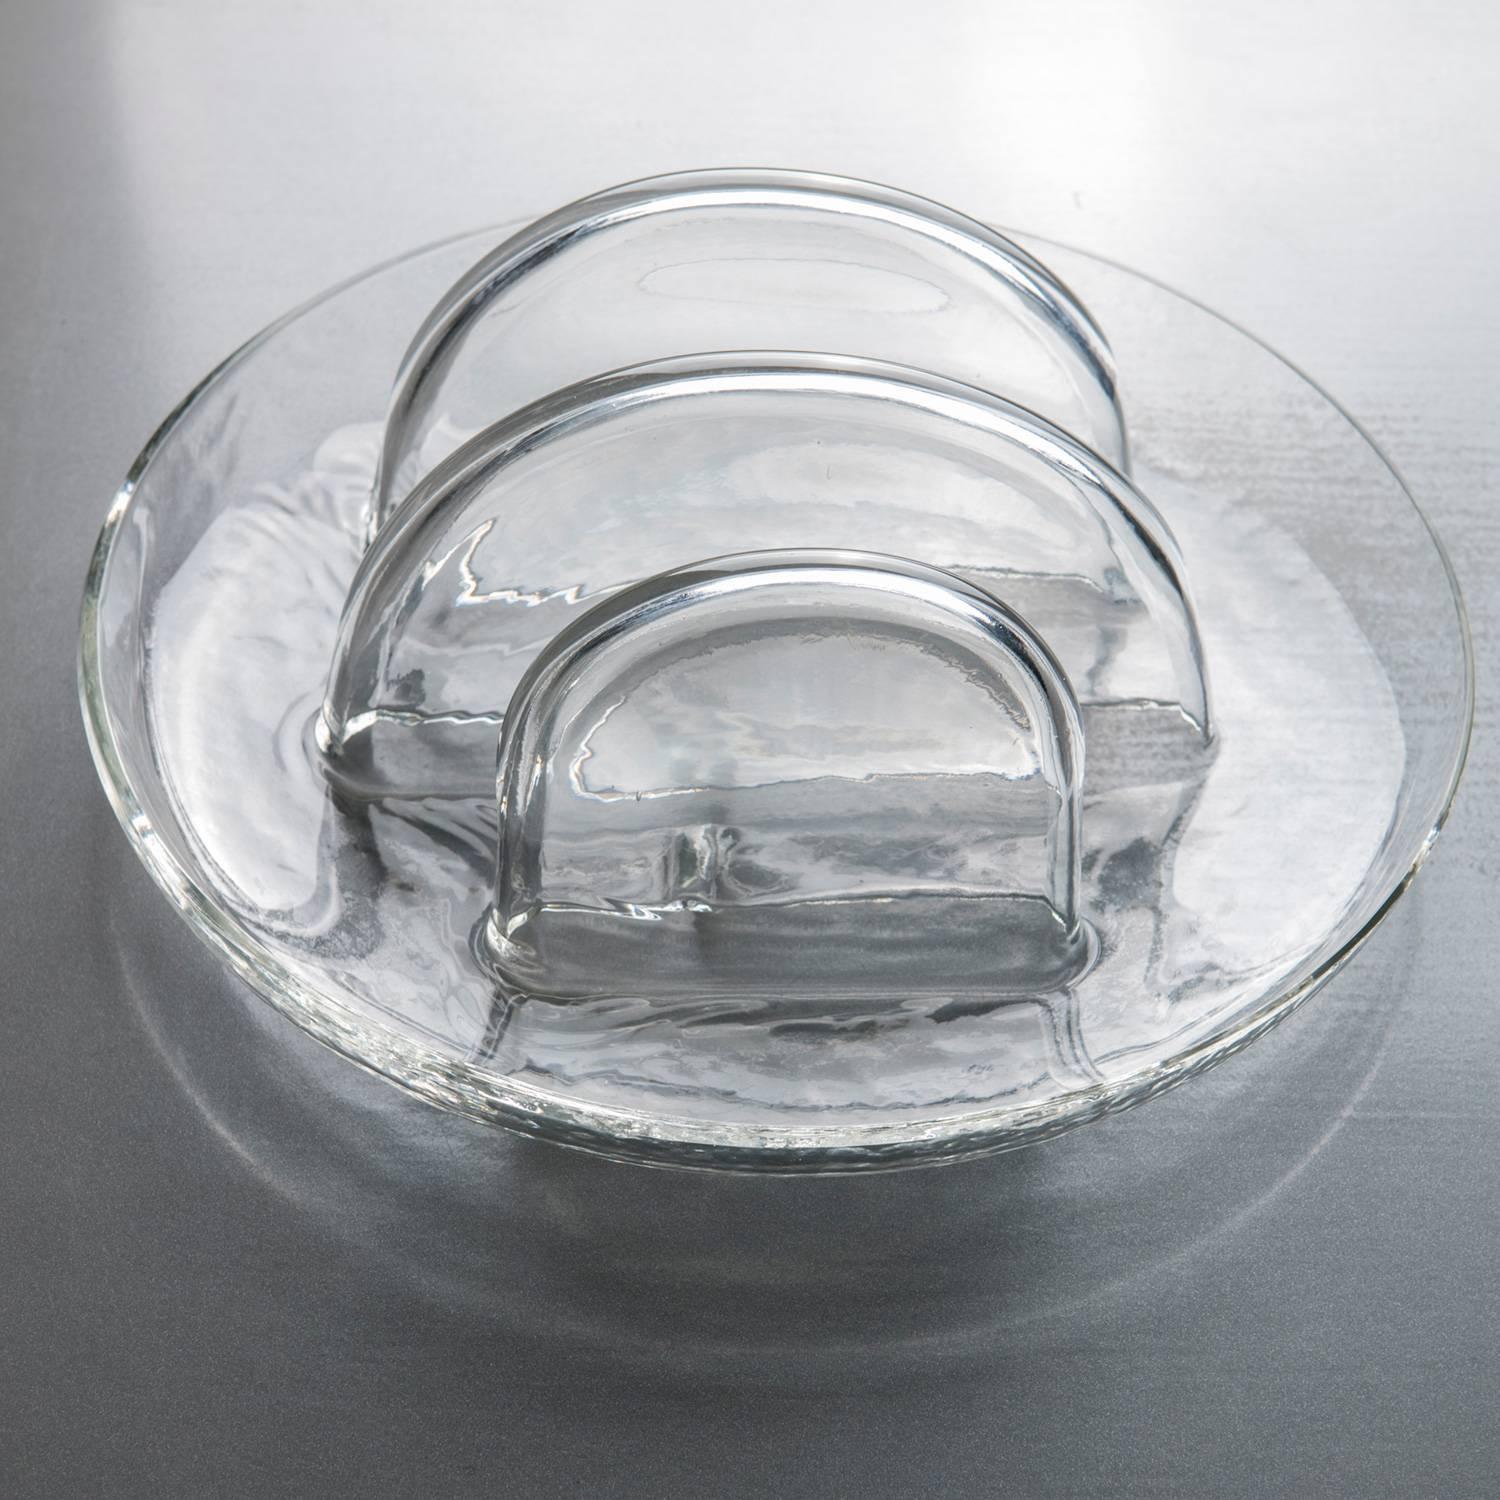 Centre de table en verre de Murano par Toni Zuccheri pour VeArt.
Verre transparent épais et formes rondes simples.
 